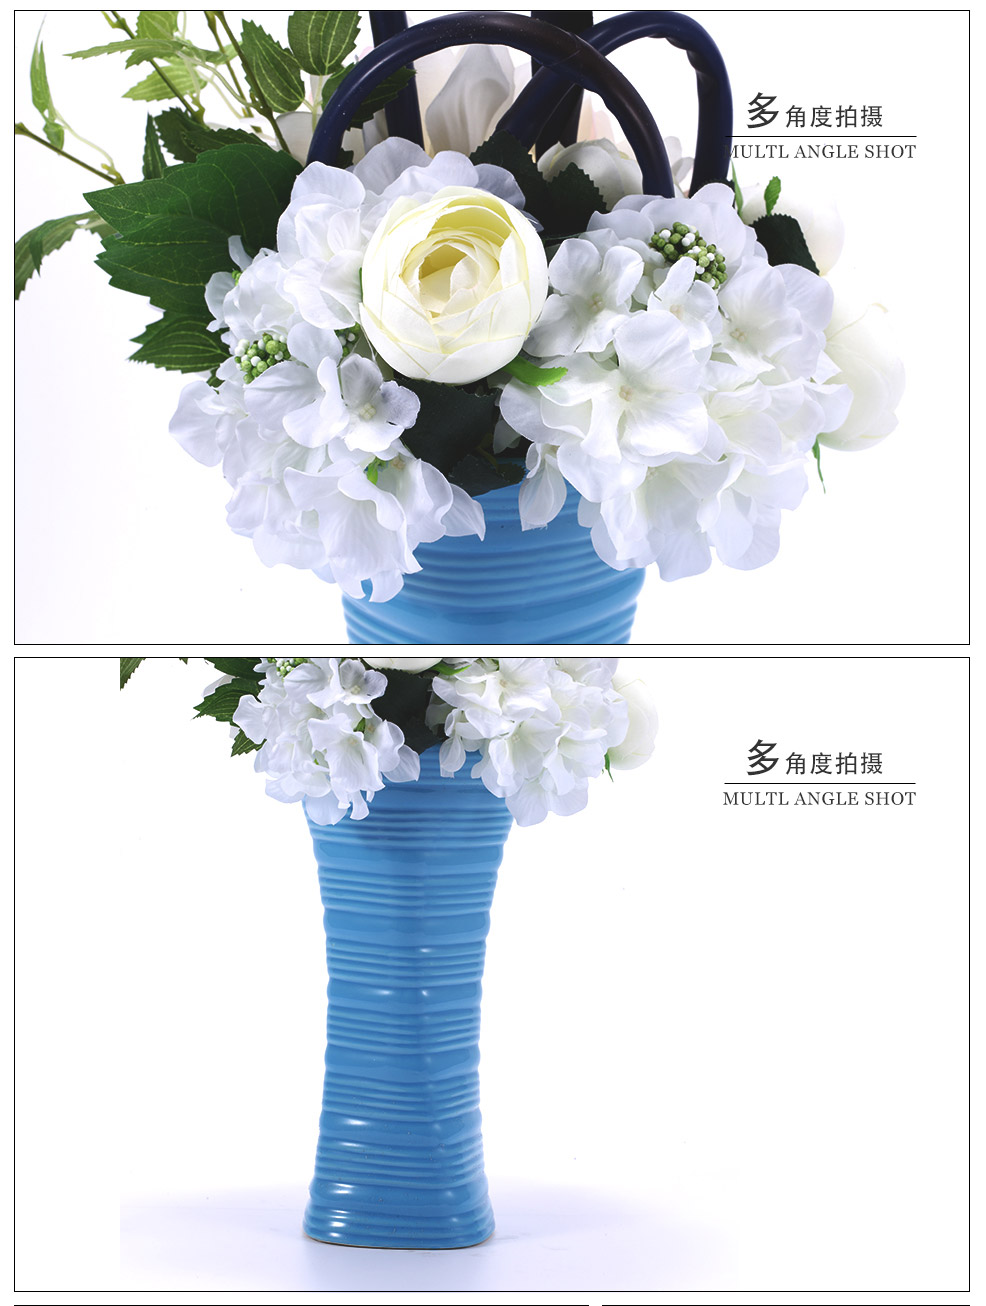 地中海风格蓝色花瓶白色兰花混式仿真花艺XL-1010-0143